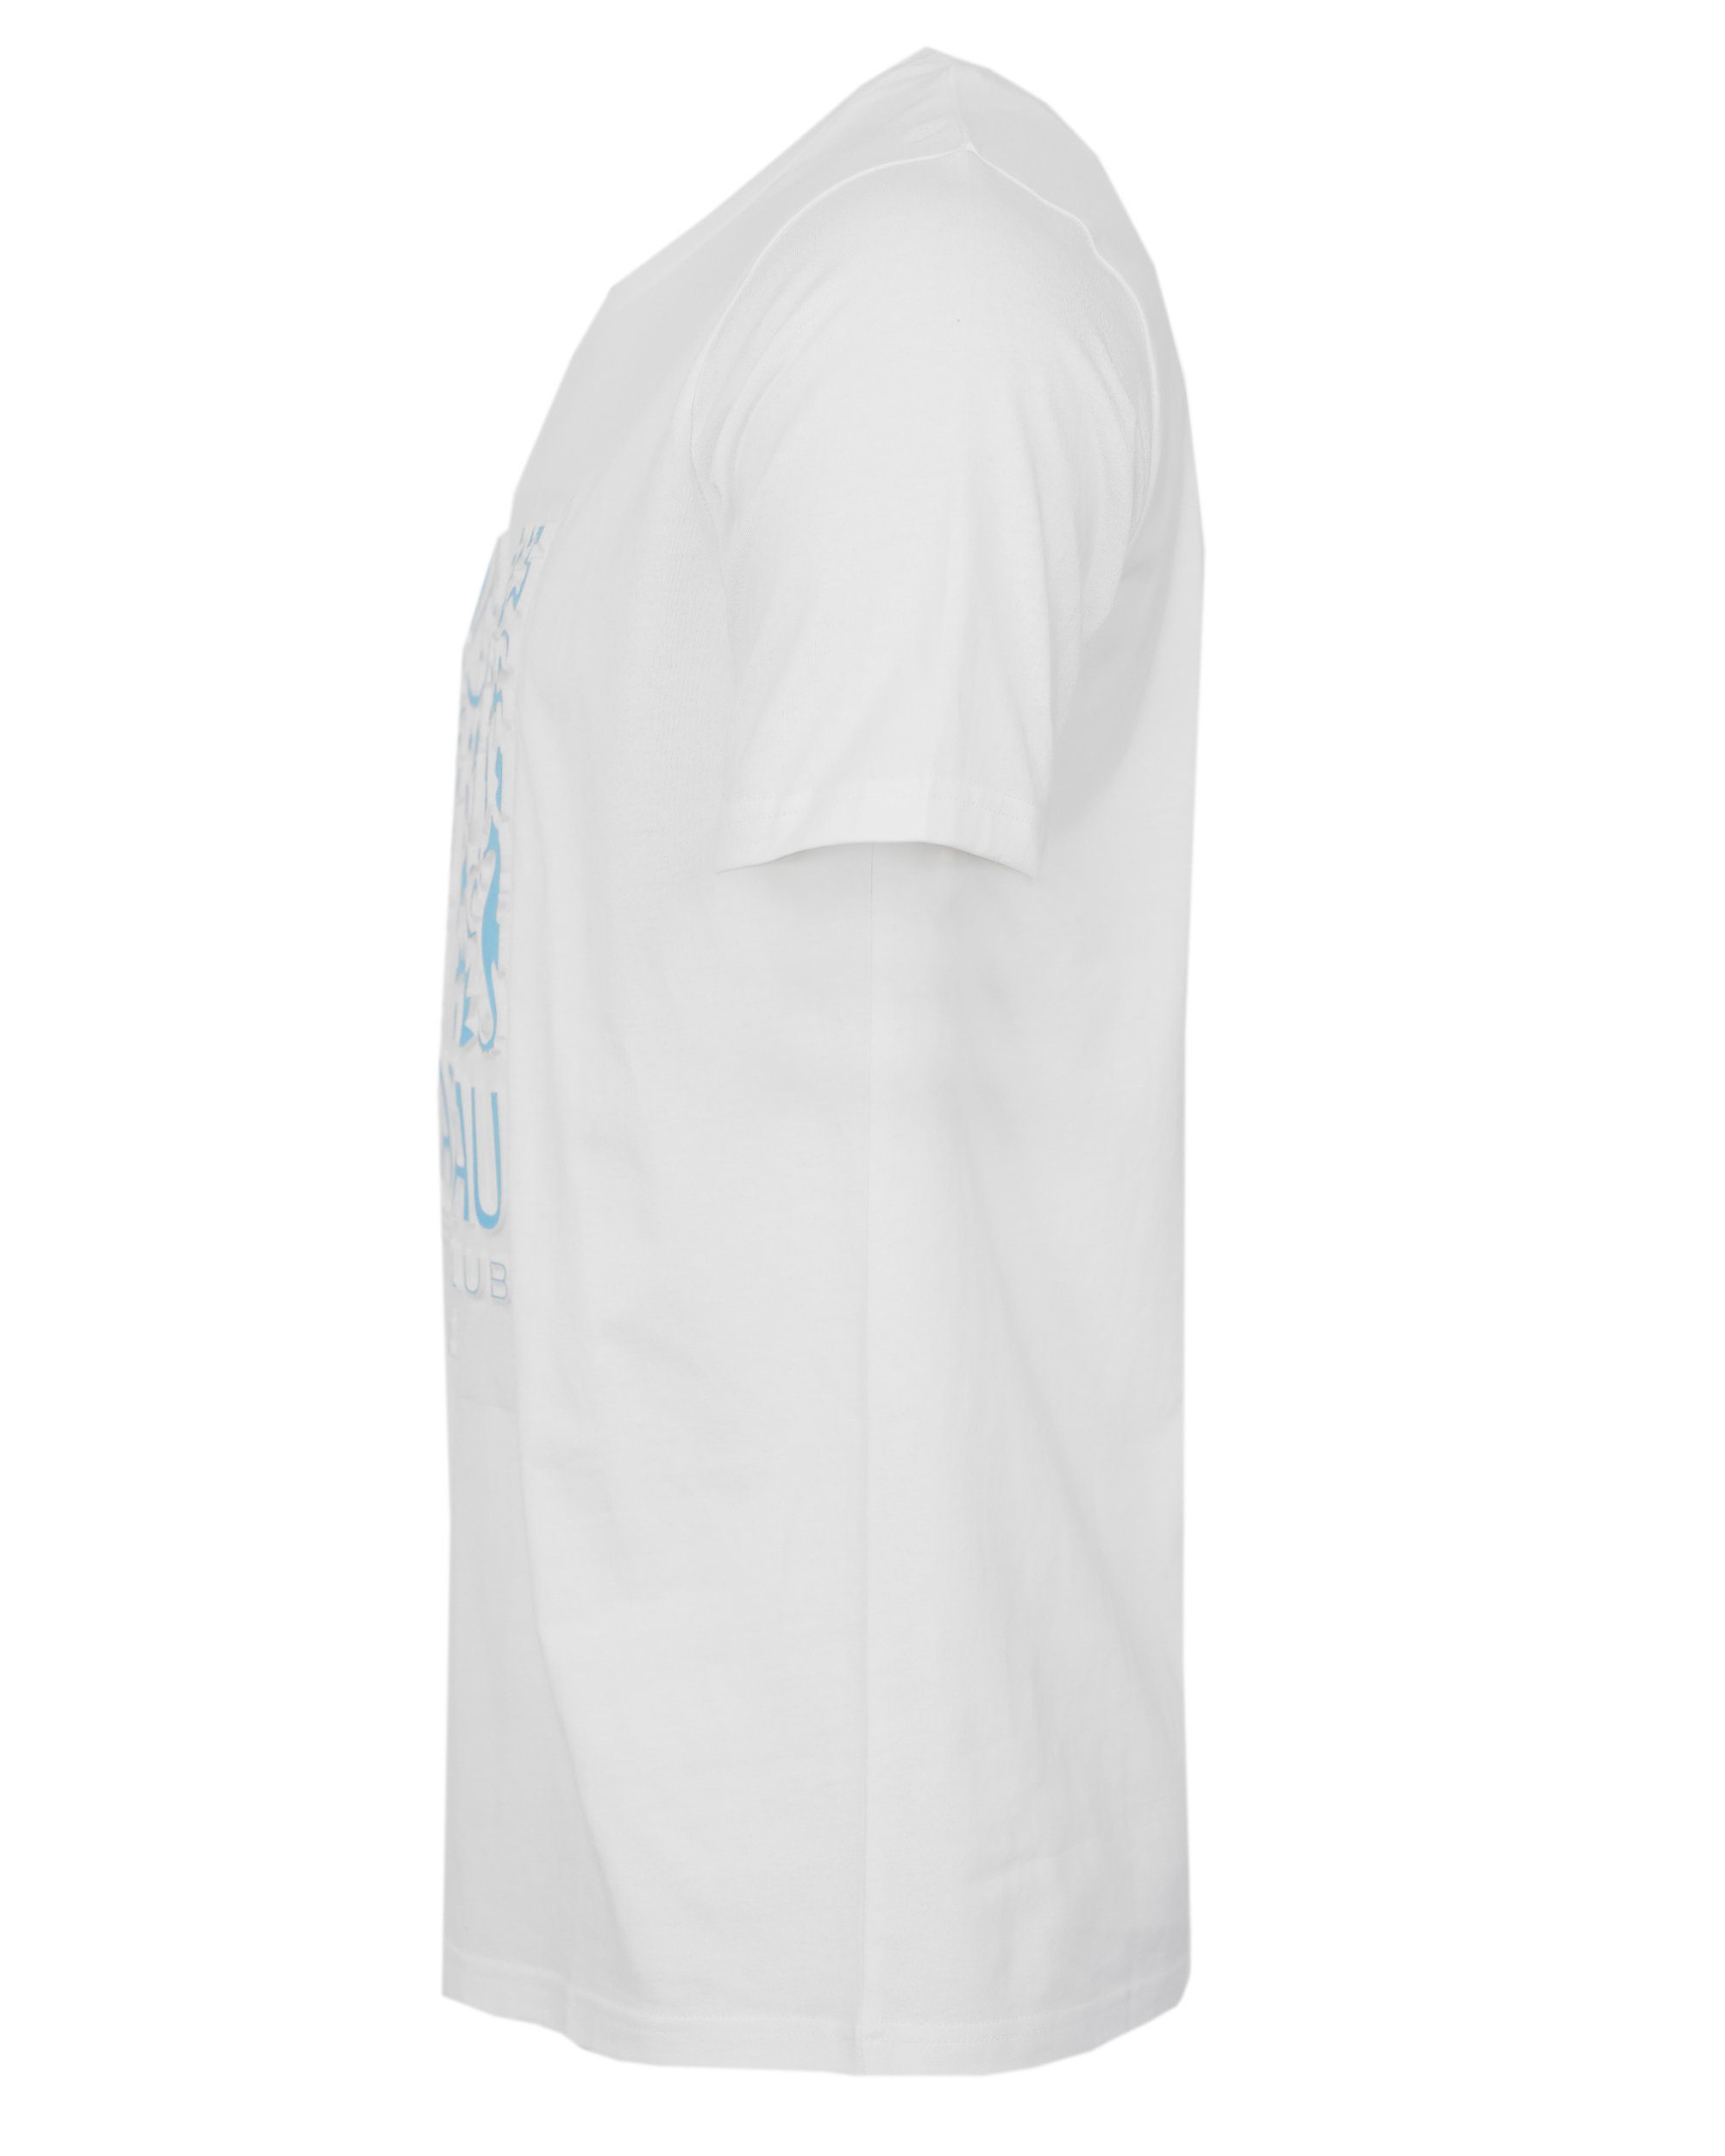 NASSAU BEACH T-Shirt NB22014